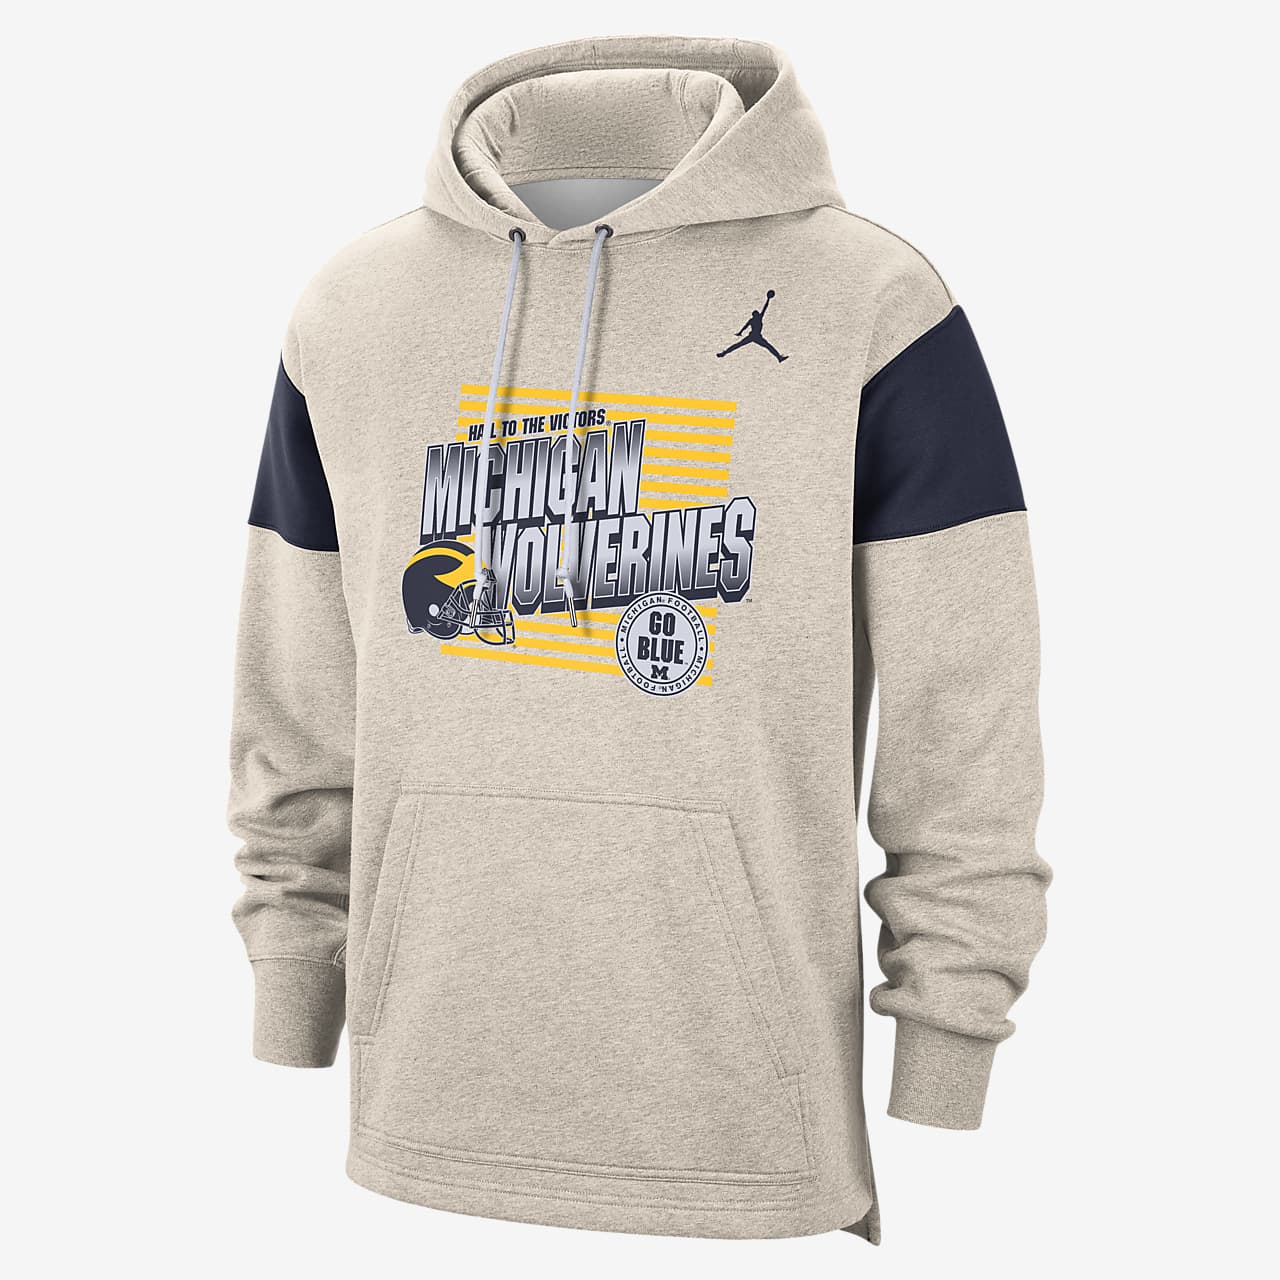 Jordan (Michigan) Pullover Hoodie. Nike.com